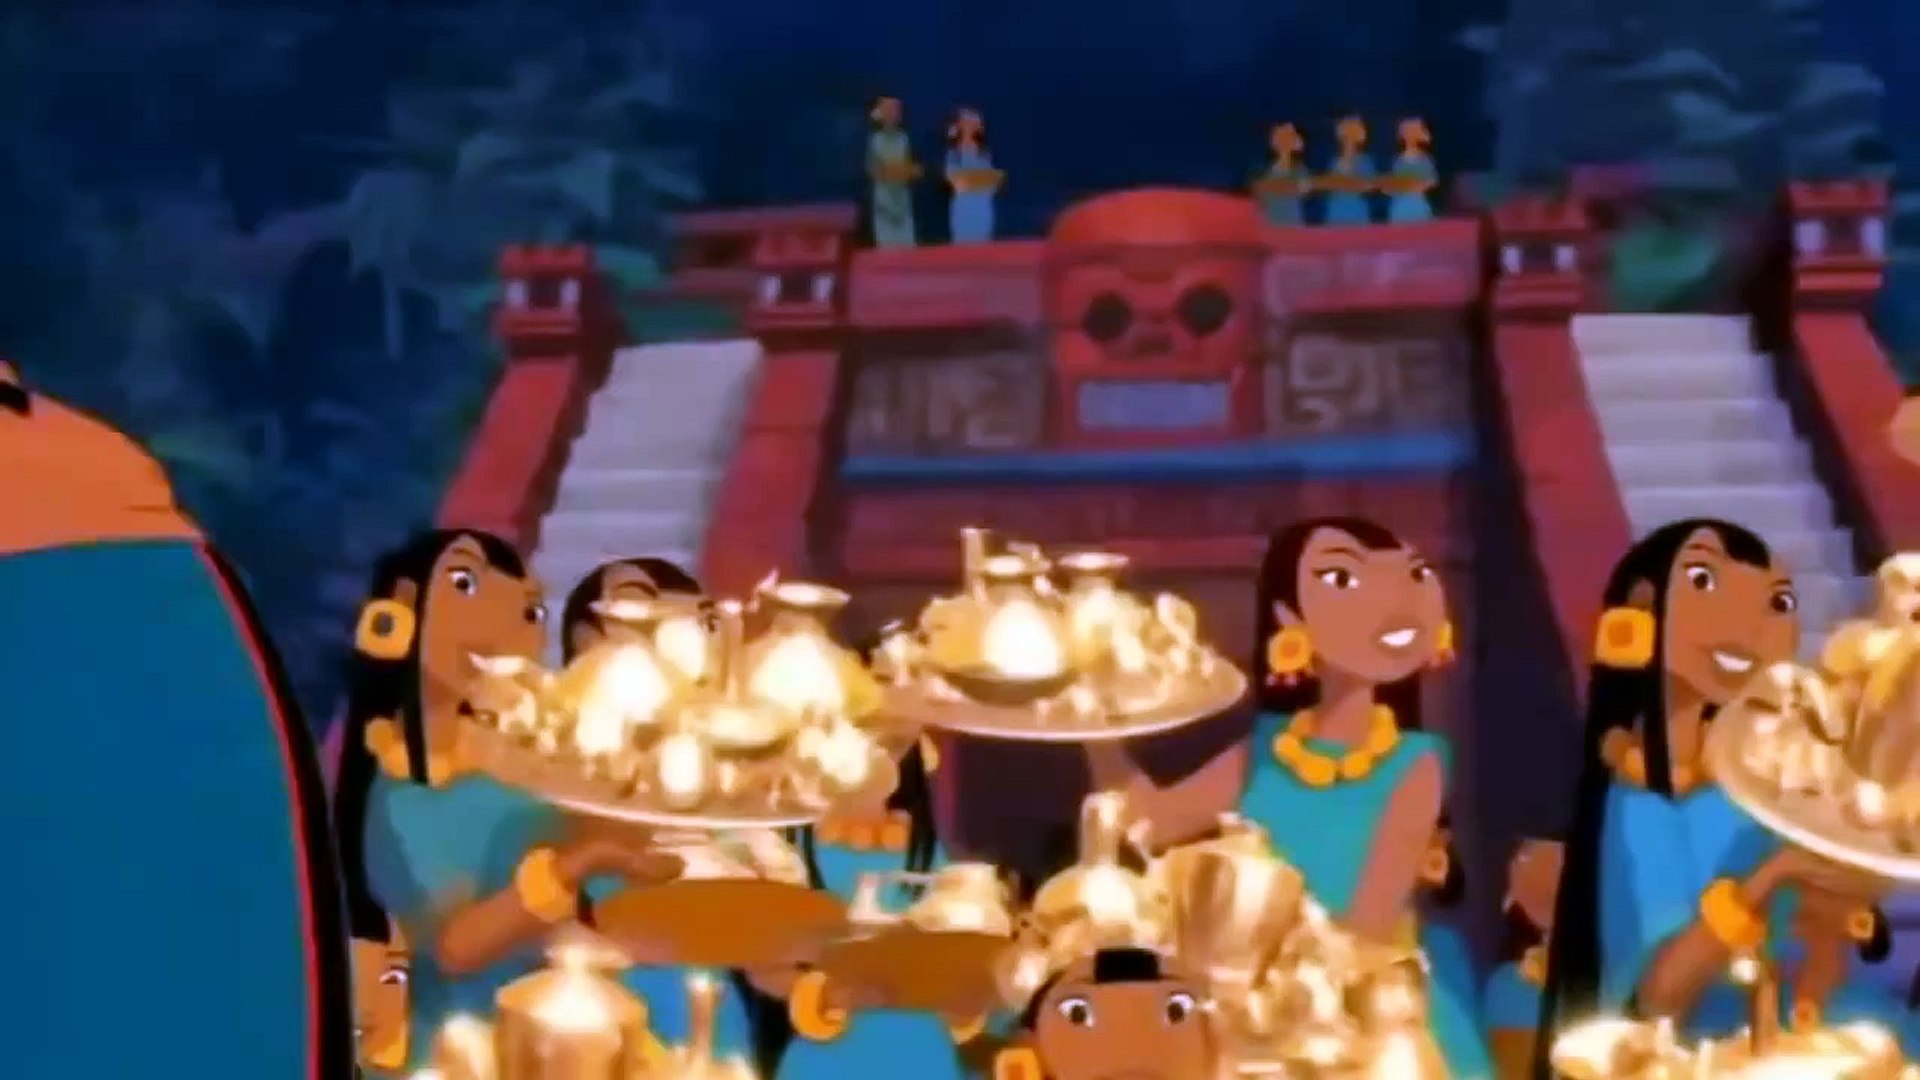 The Road to El Dorado ☆ Cartoon Disney - Comedy Movies - video Dailymotion